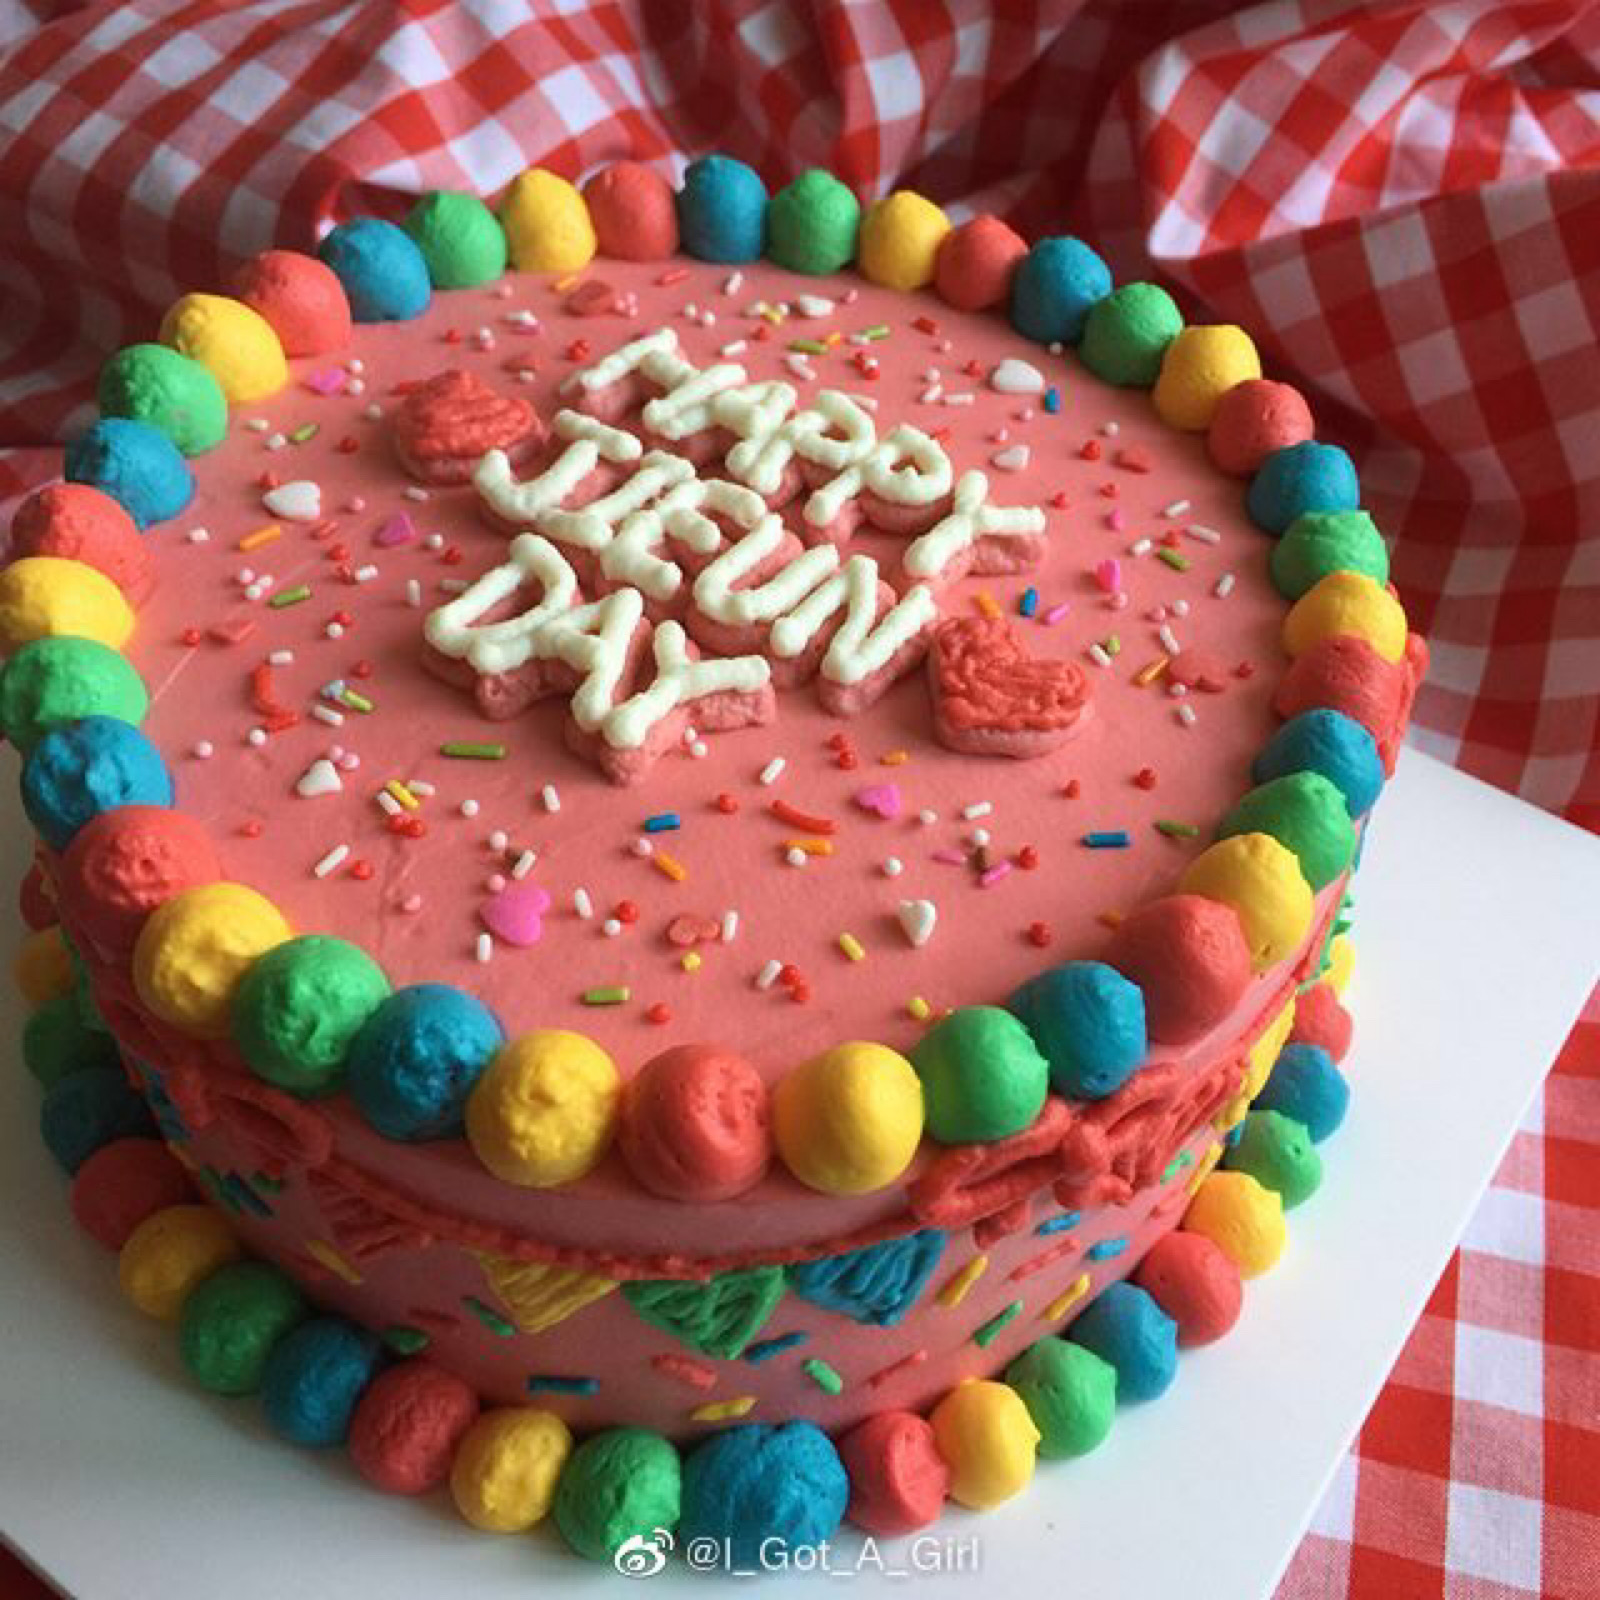 既好吃又好看的生日蛋糕 森系简约生日蛋糕做法